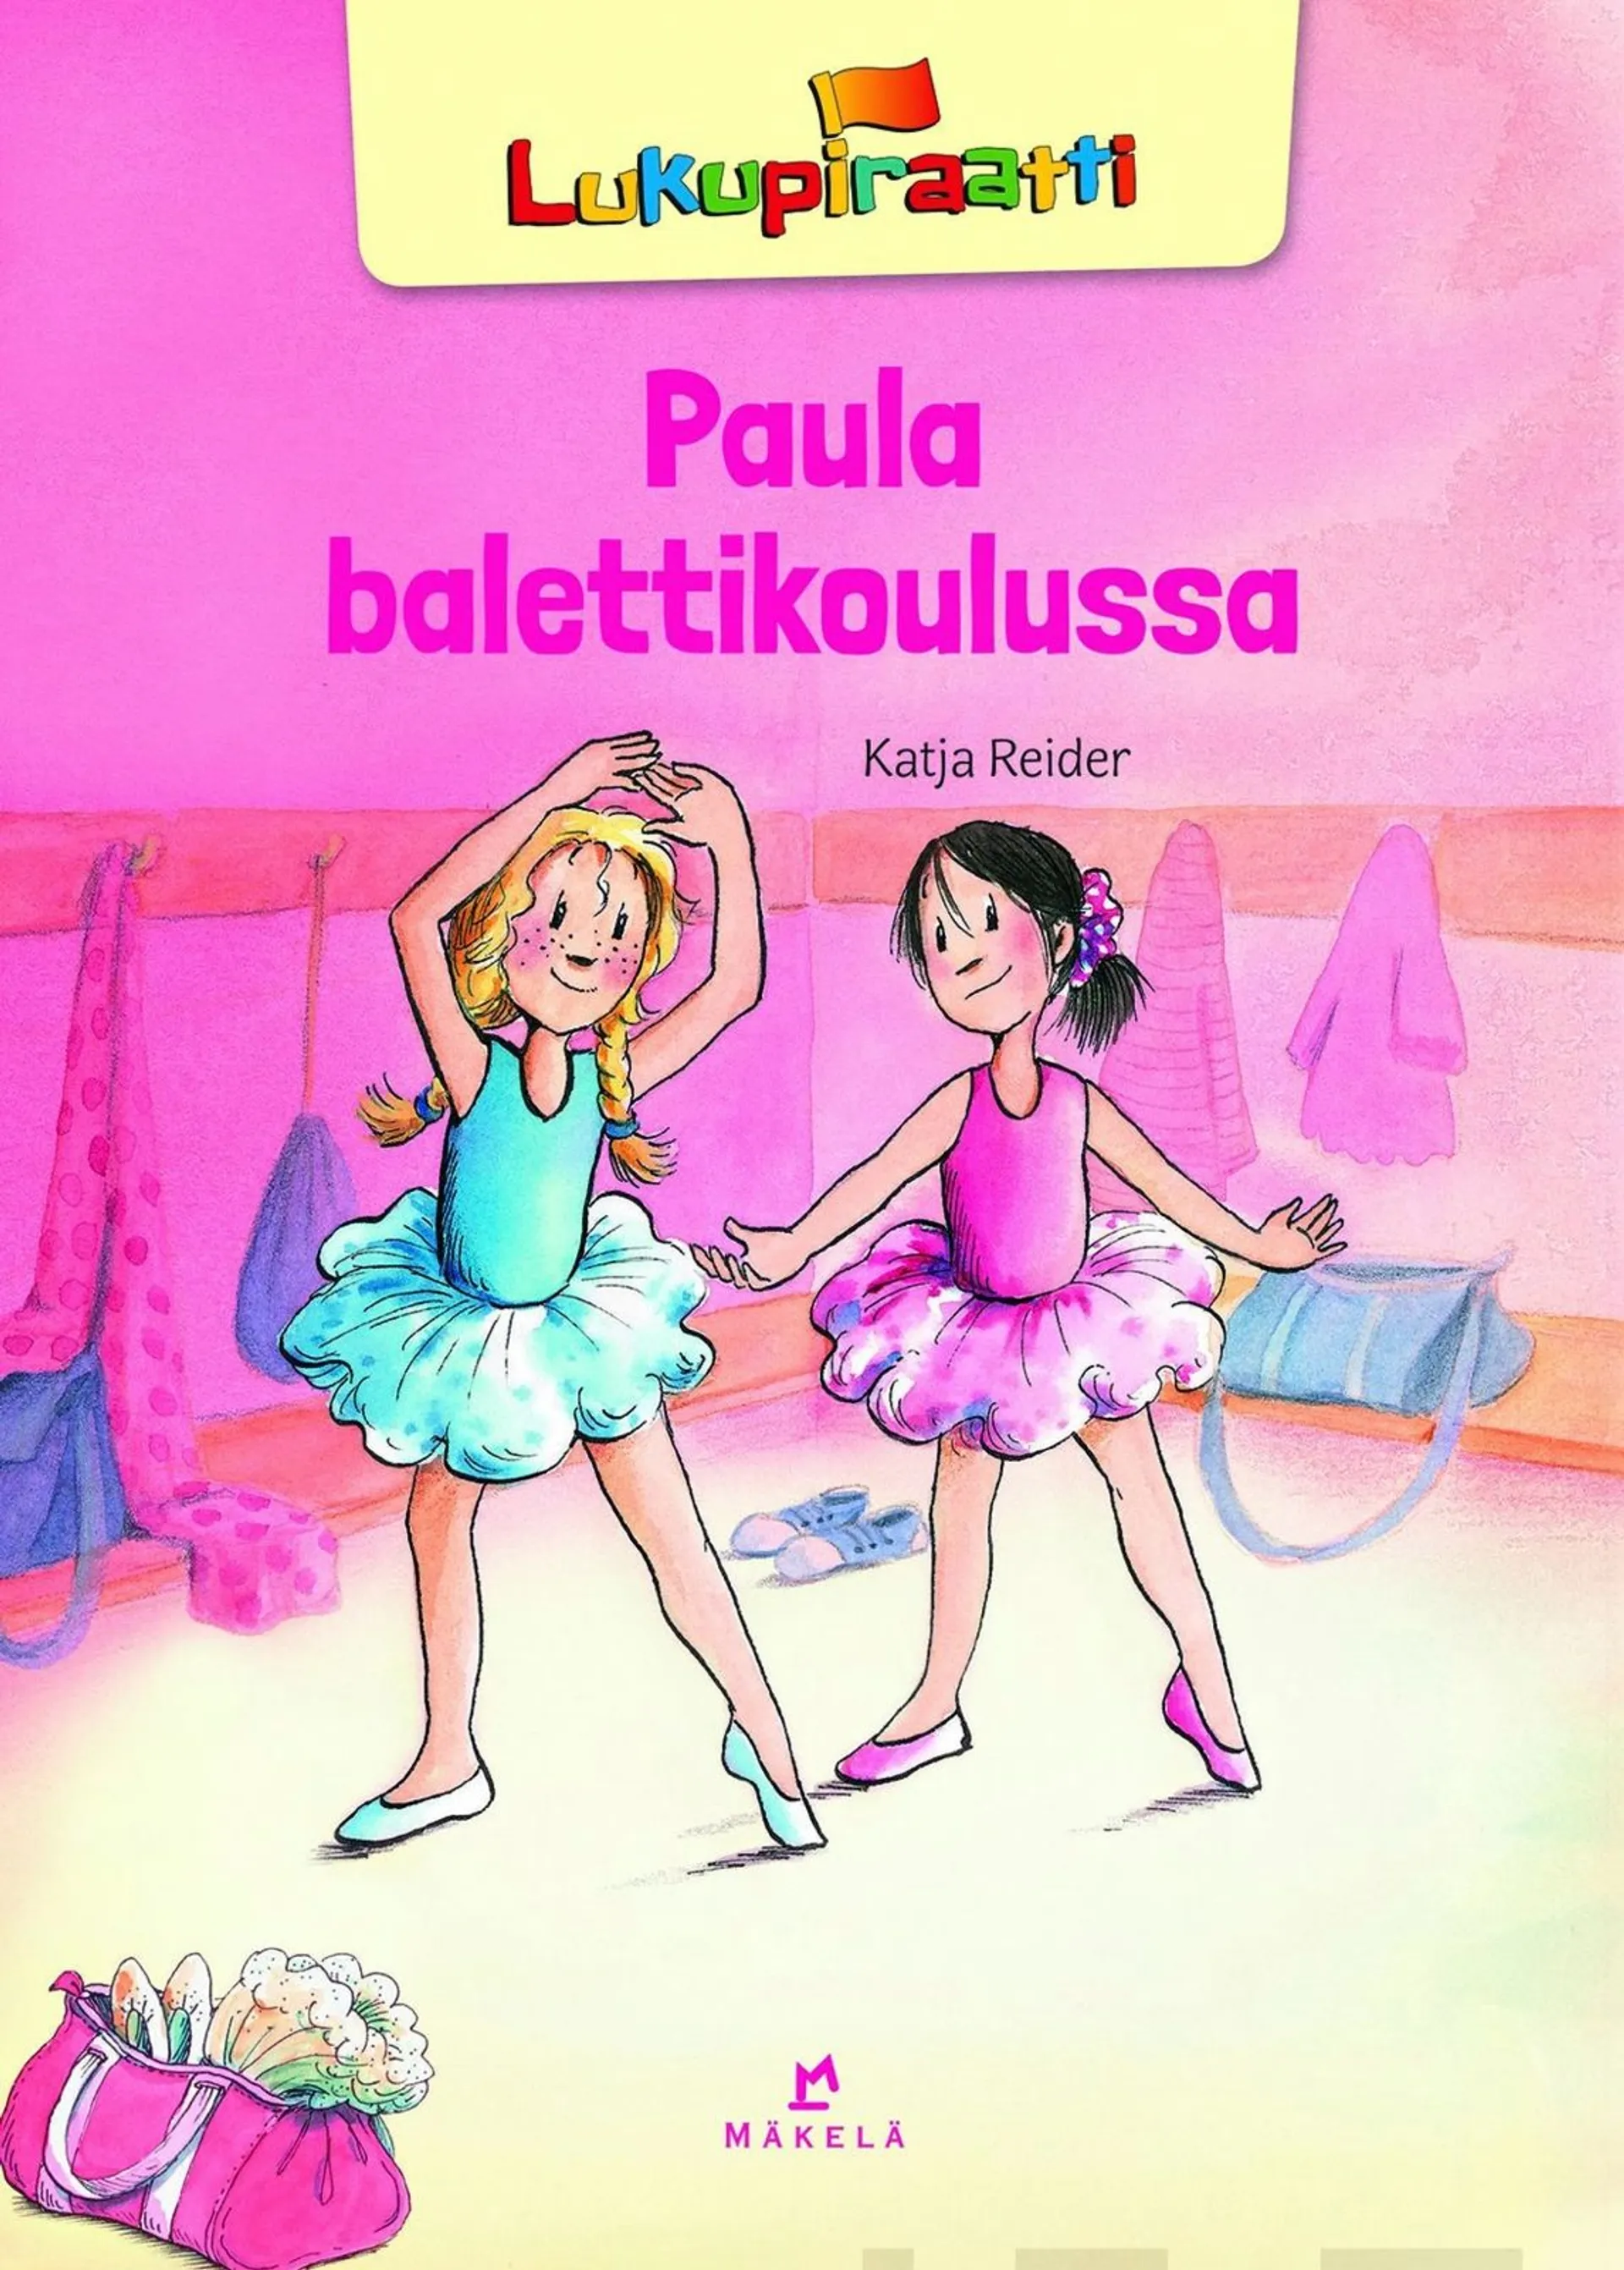 Reider, Paula balettikoulussa - Pienaakkoset